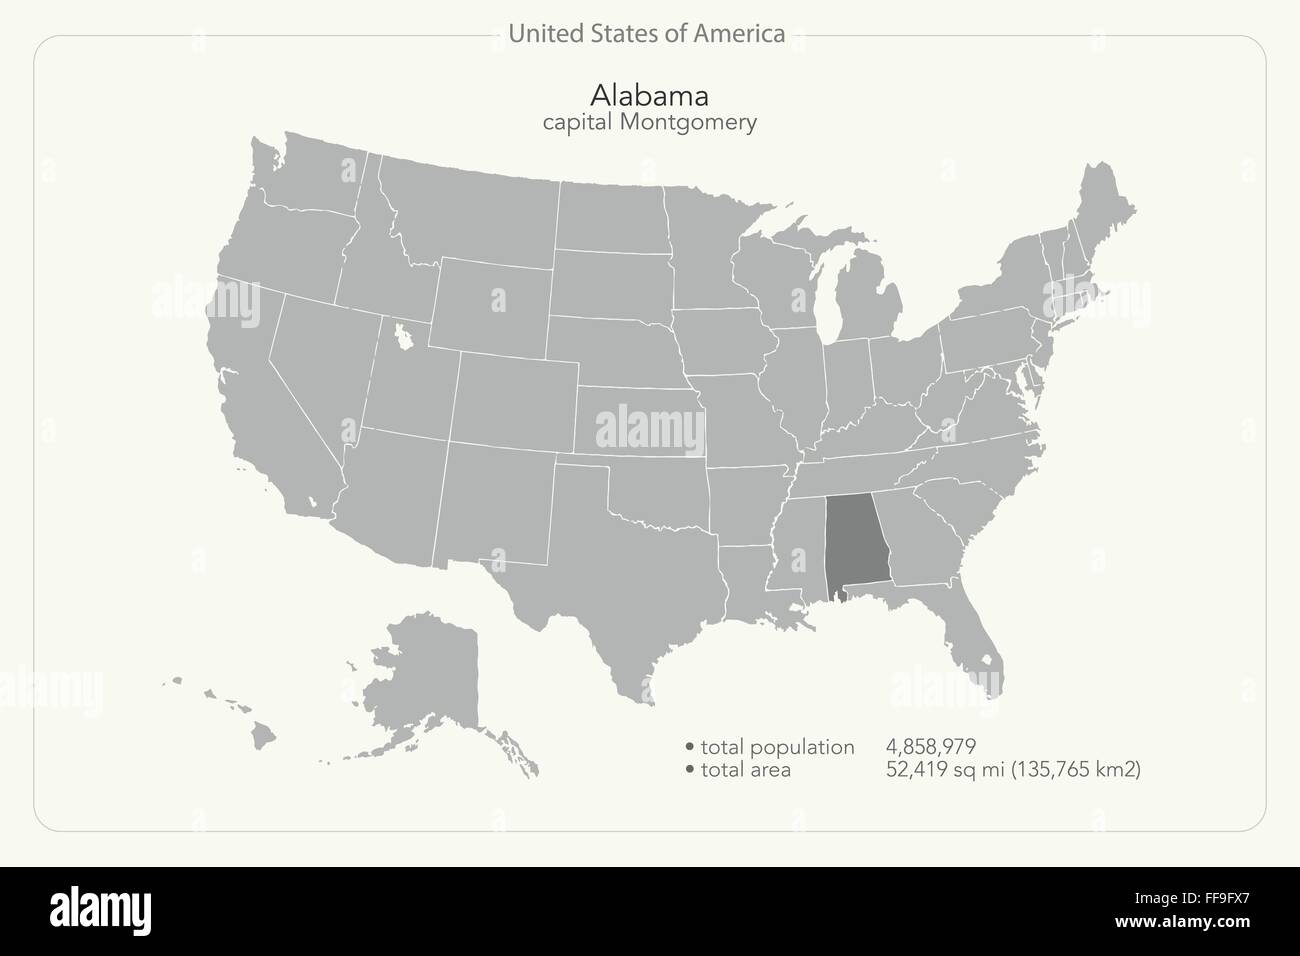 Stati Uniti d'America mappa isolato e Alabama membro territorio. vettore politico USA mappa geografica design banner Illustrazione Vettoriale